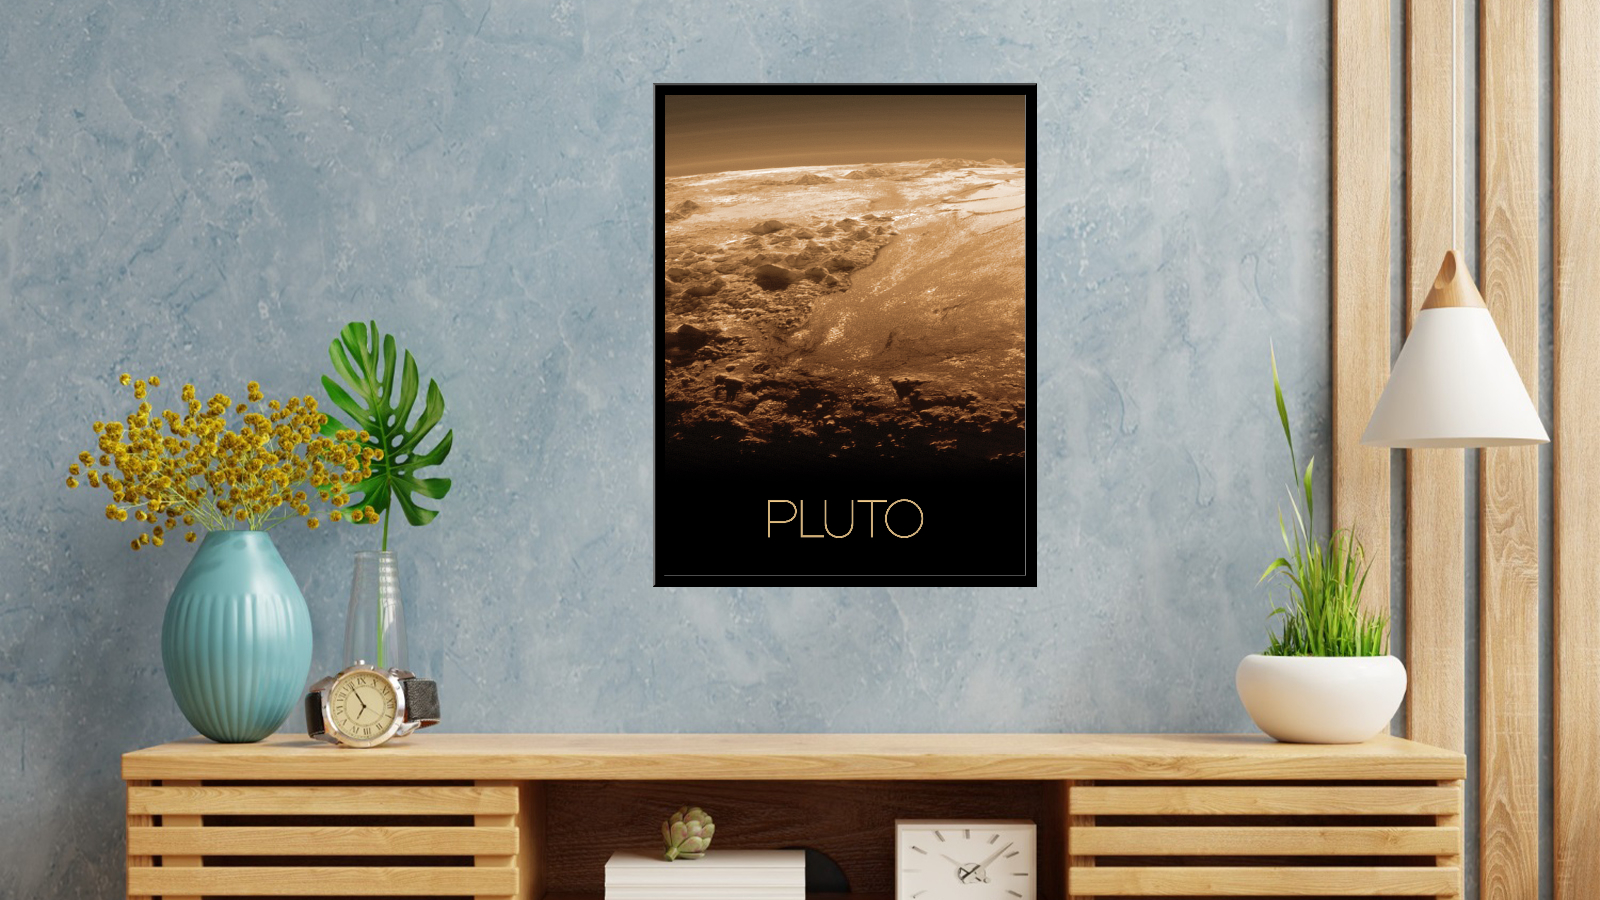 Pluton - 2